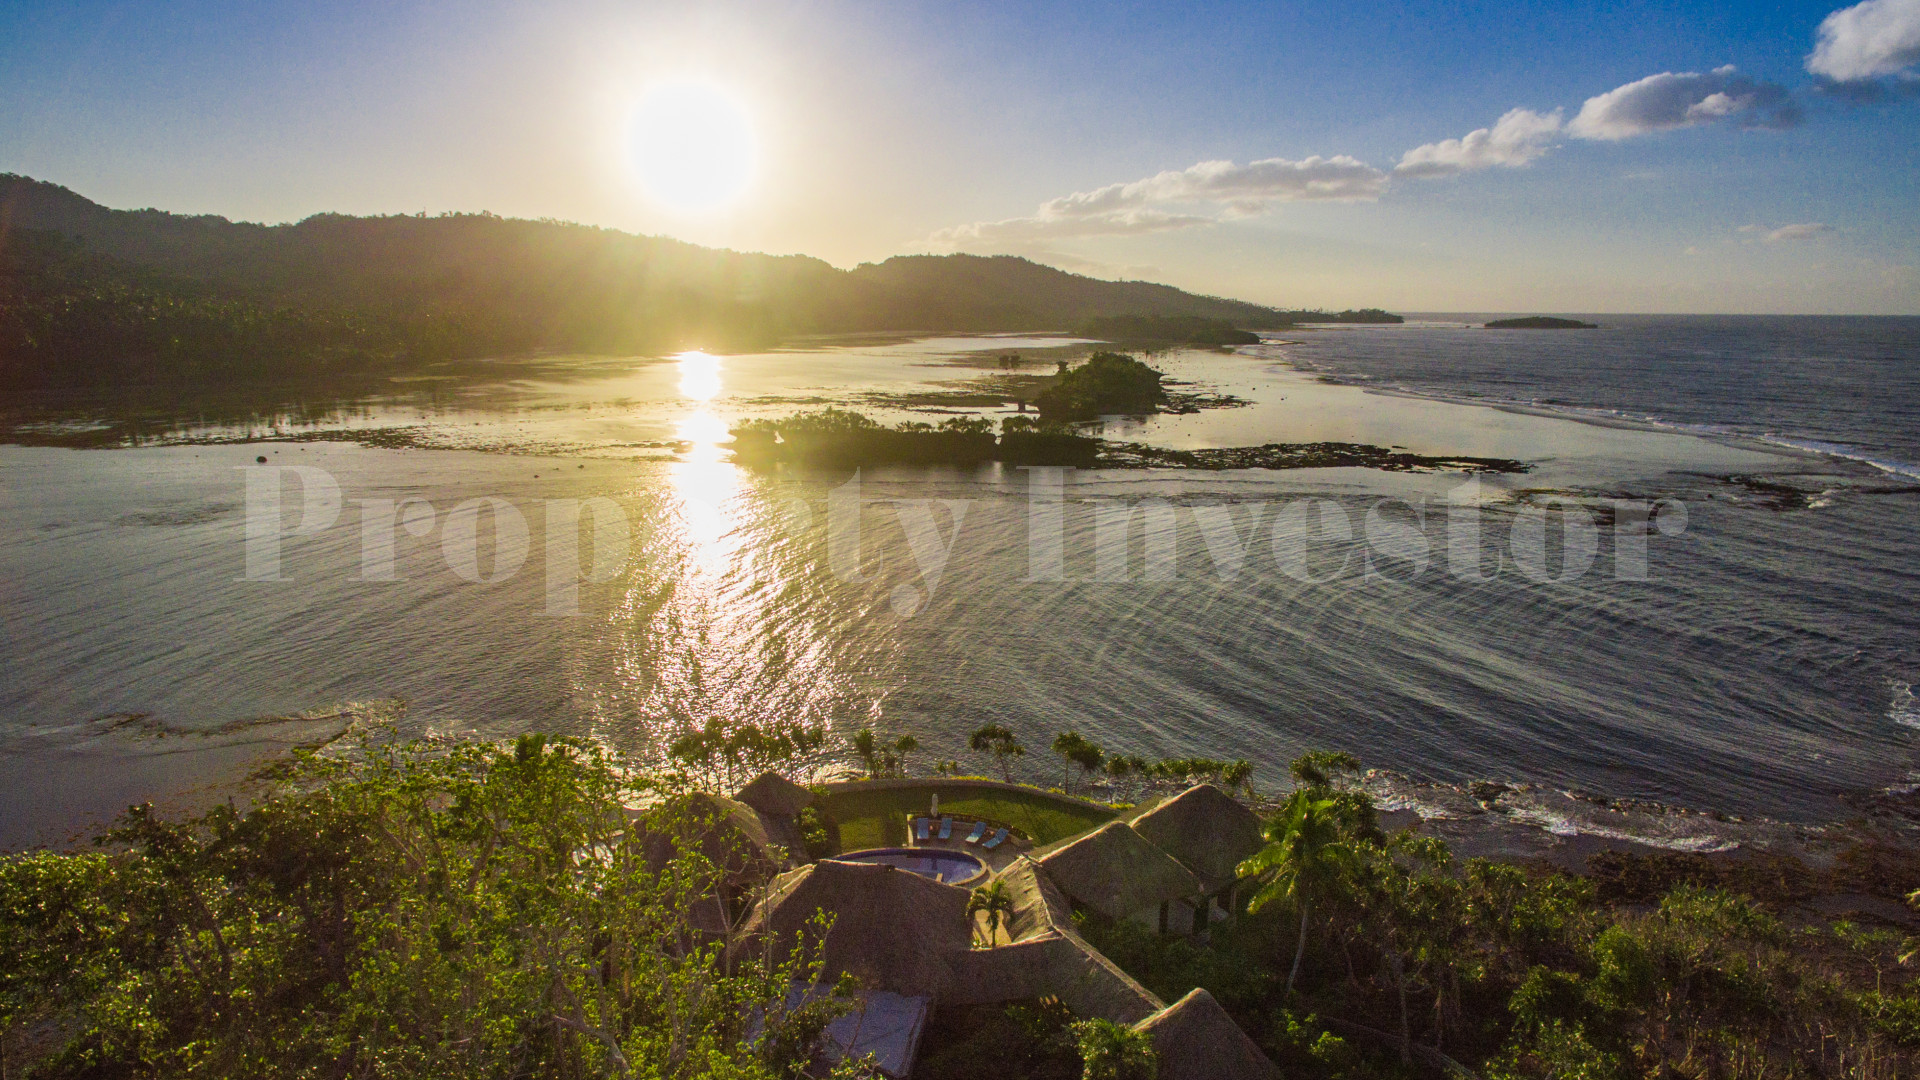 4,039 m² Private Island Freehold Lot for Sale in Vanua Levu, Fiji (Lot 8)